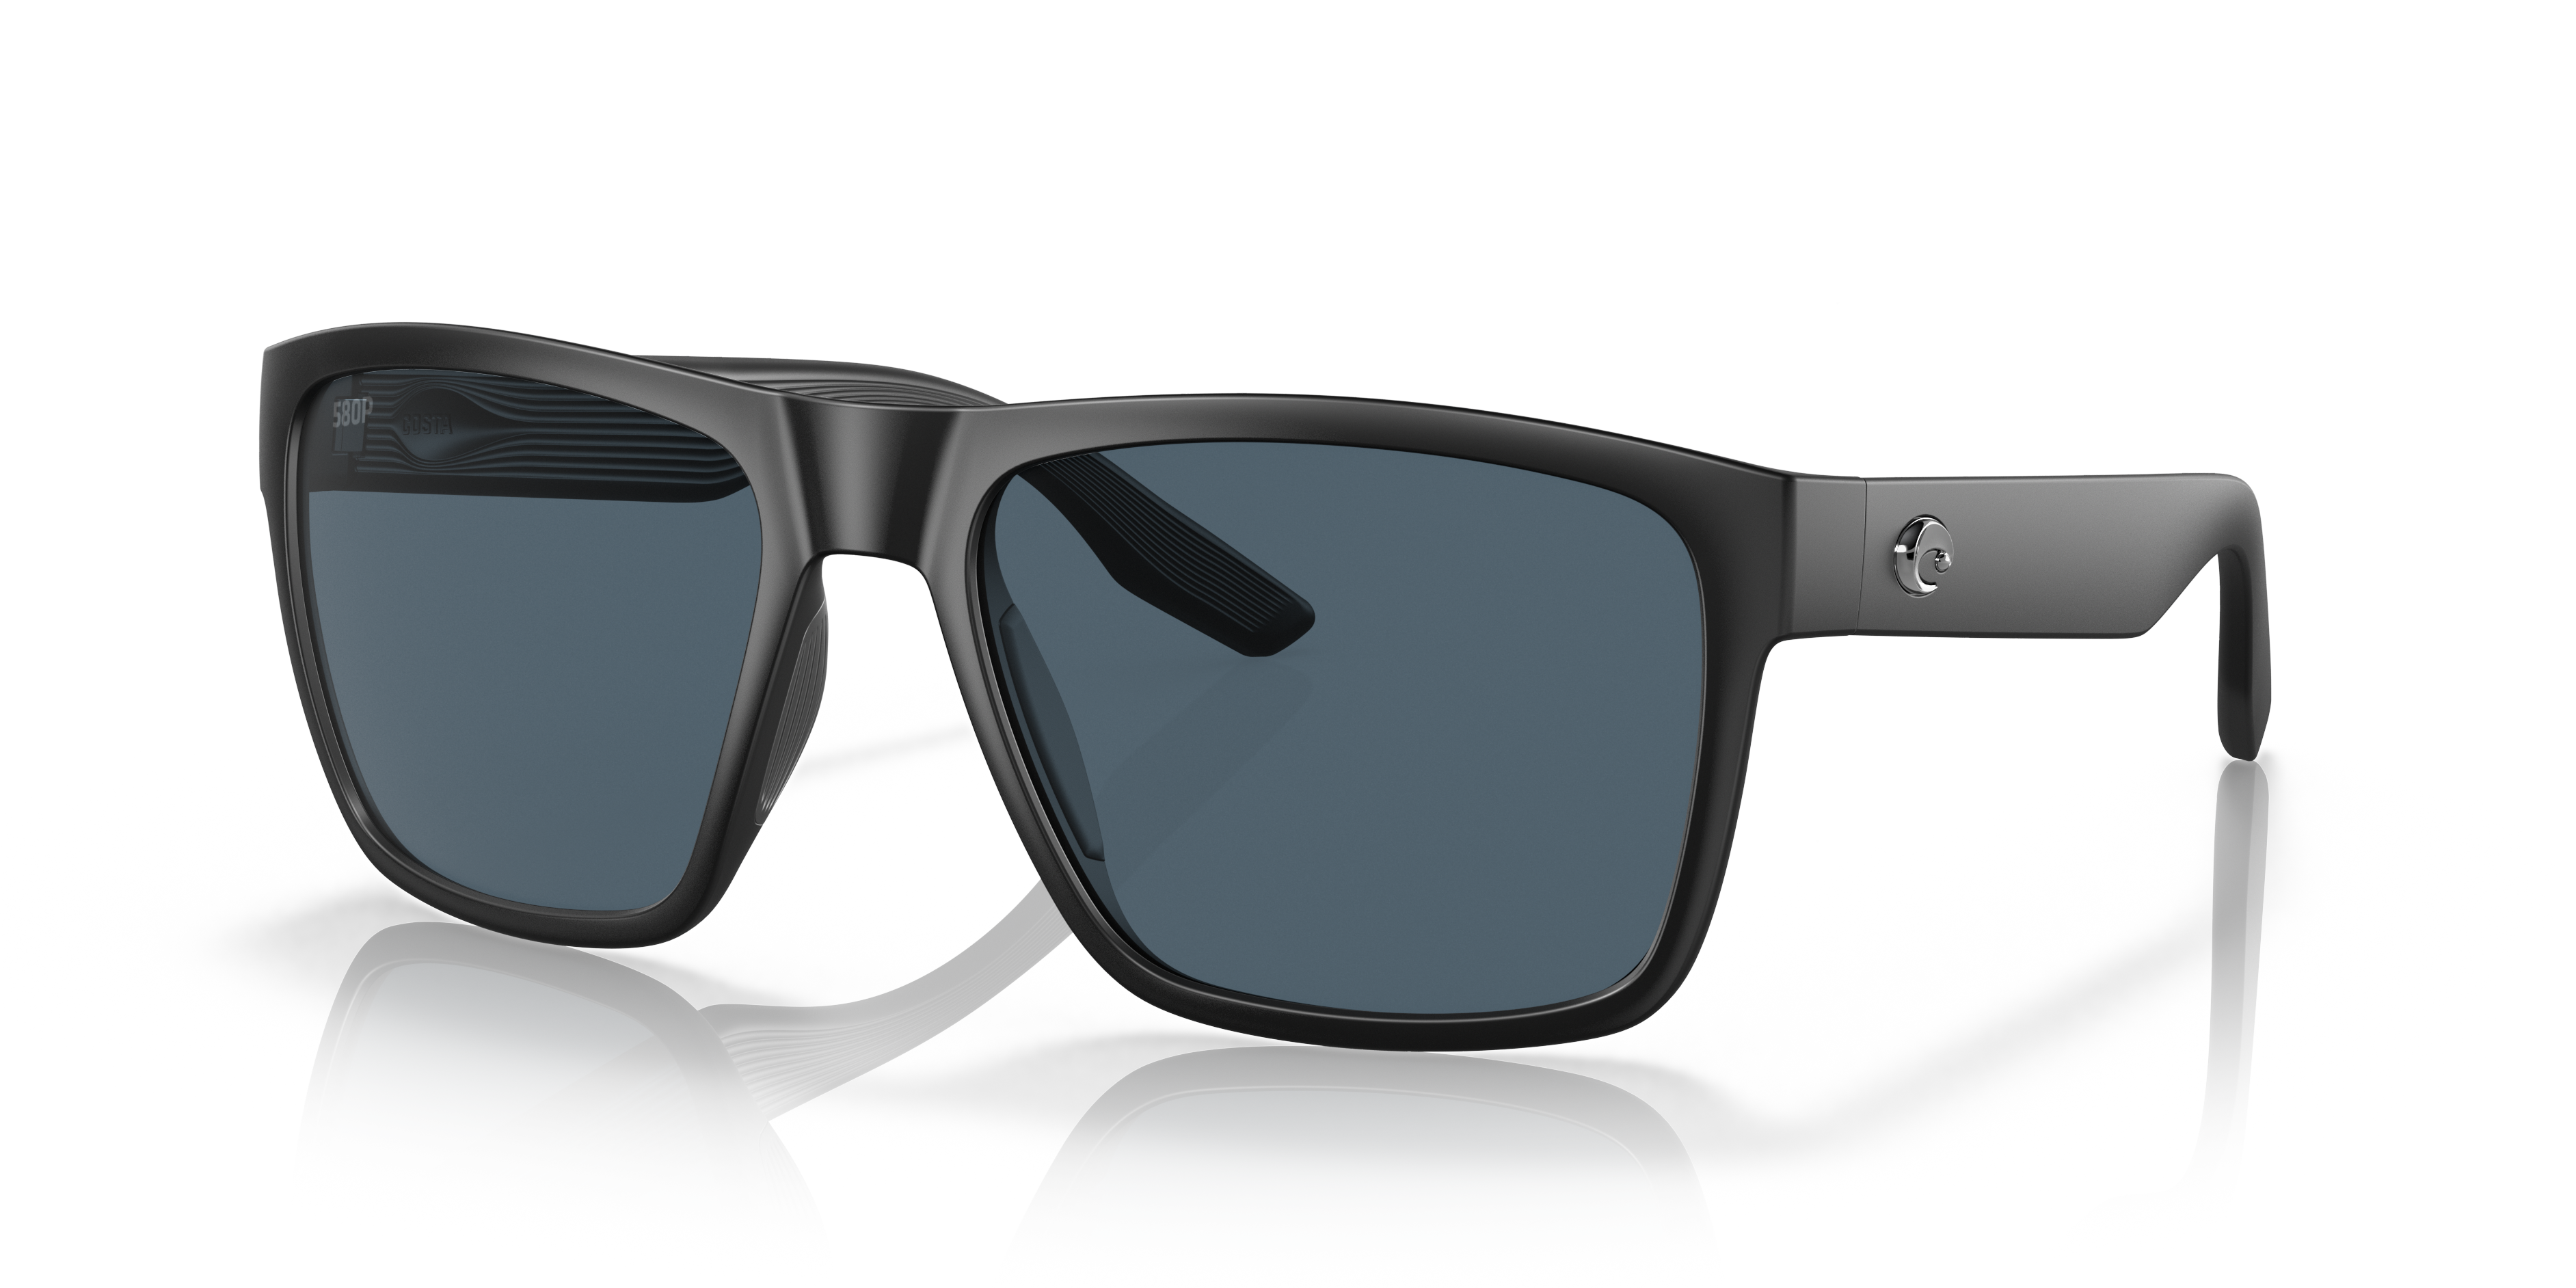 Paunch XL Polarized Sunglasses in Gray | Costa Del Mar®